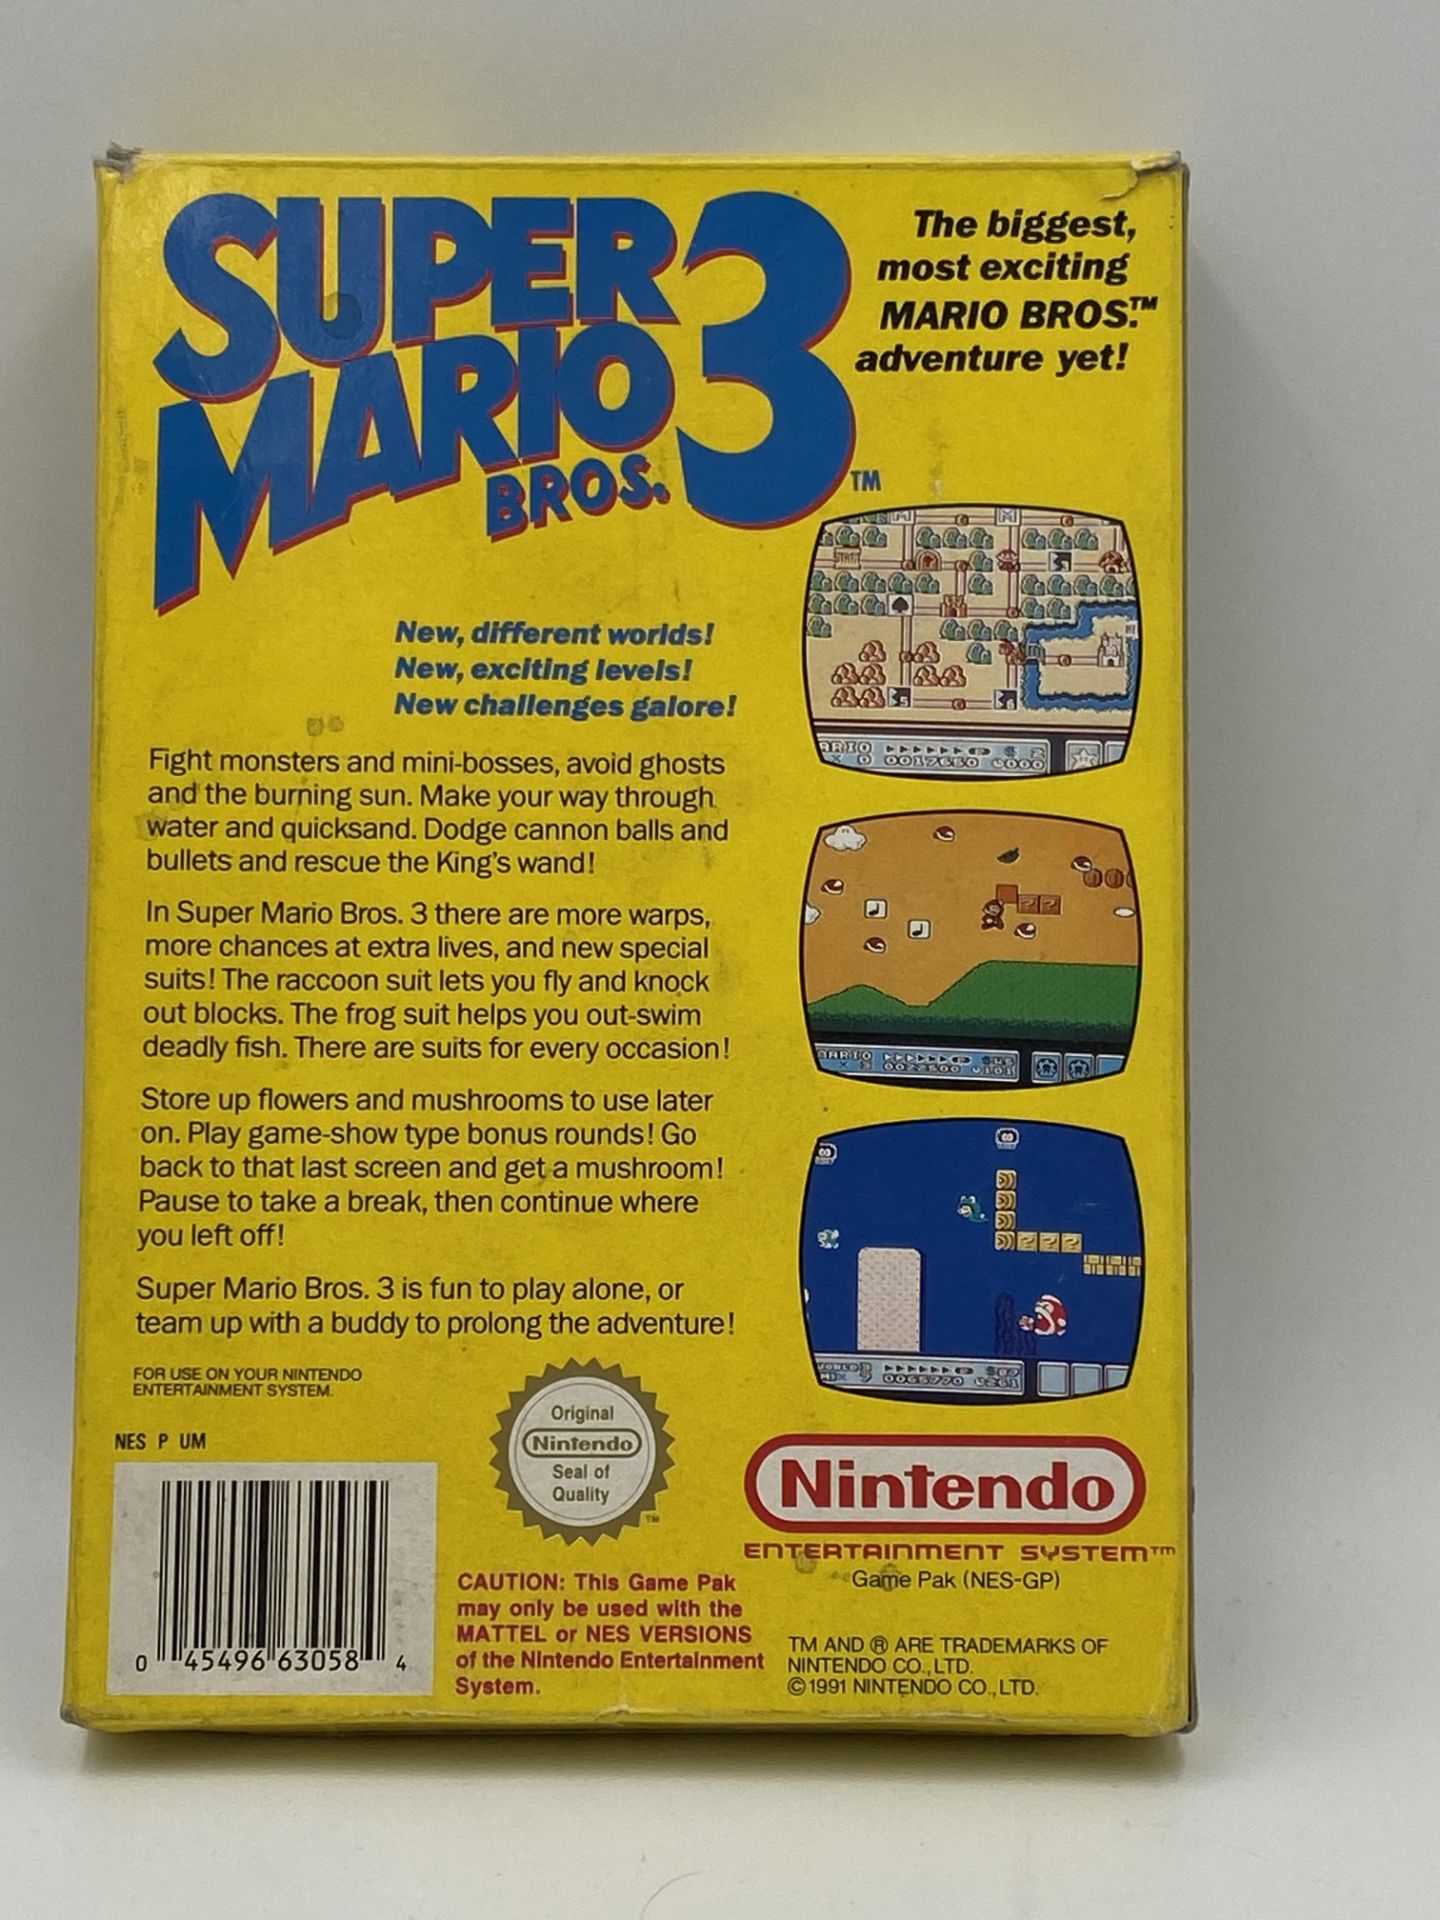 Nintendo NES Super Mario Bros 3, NES Version, boxed - Image 2 of 3